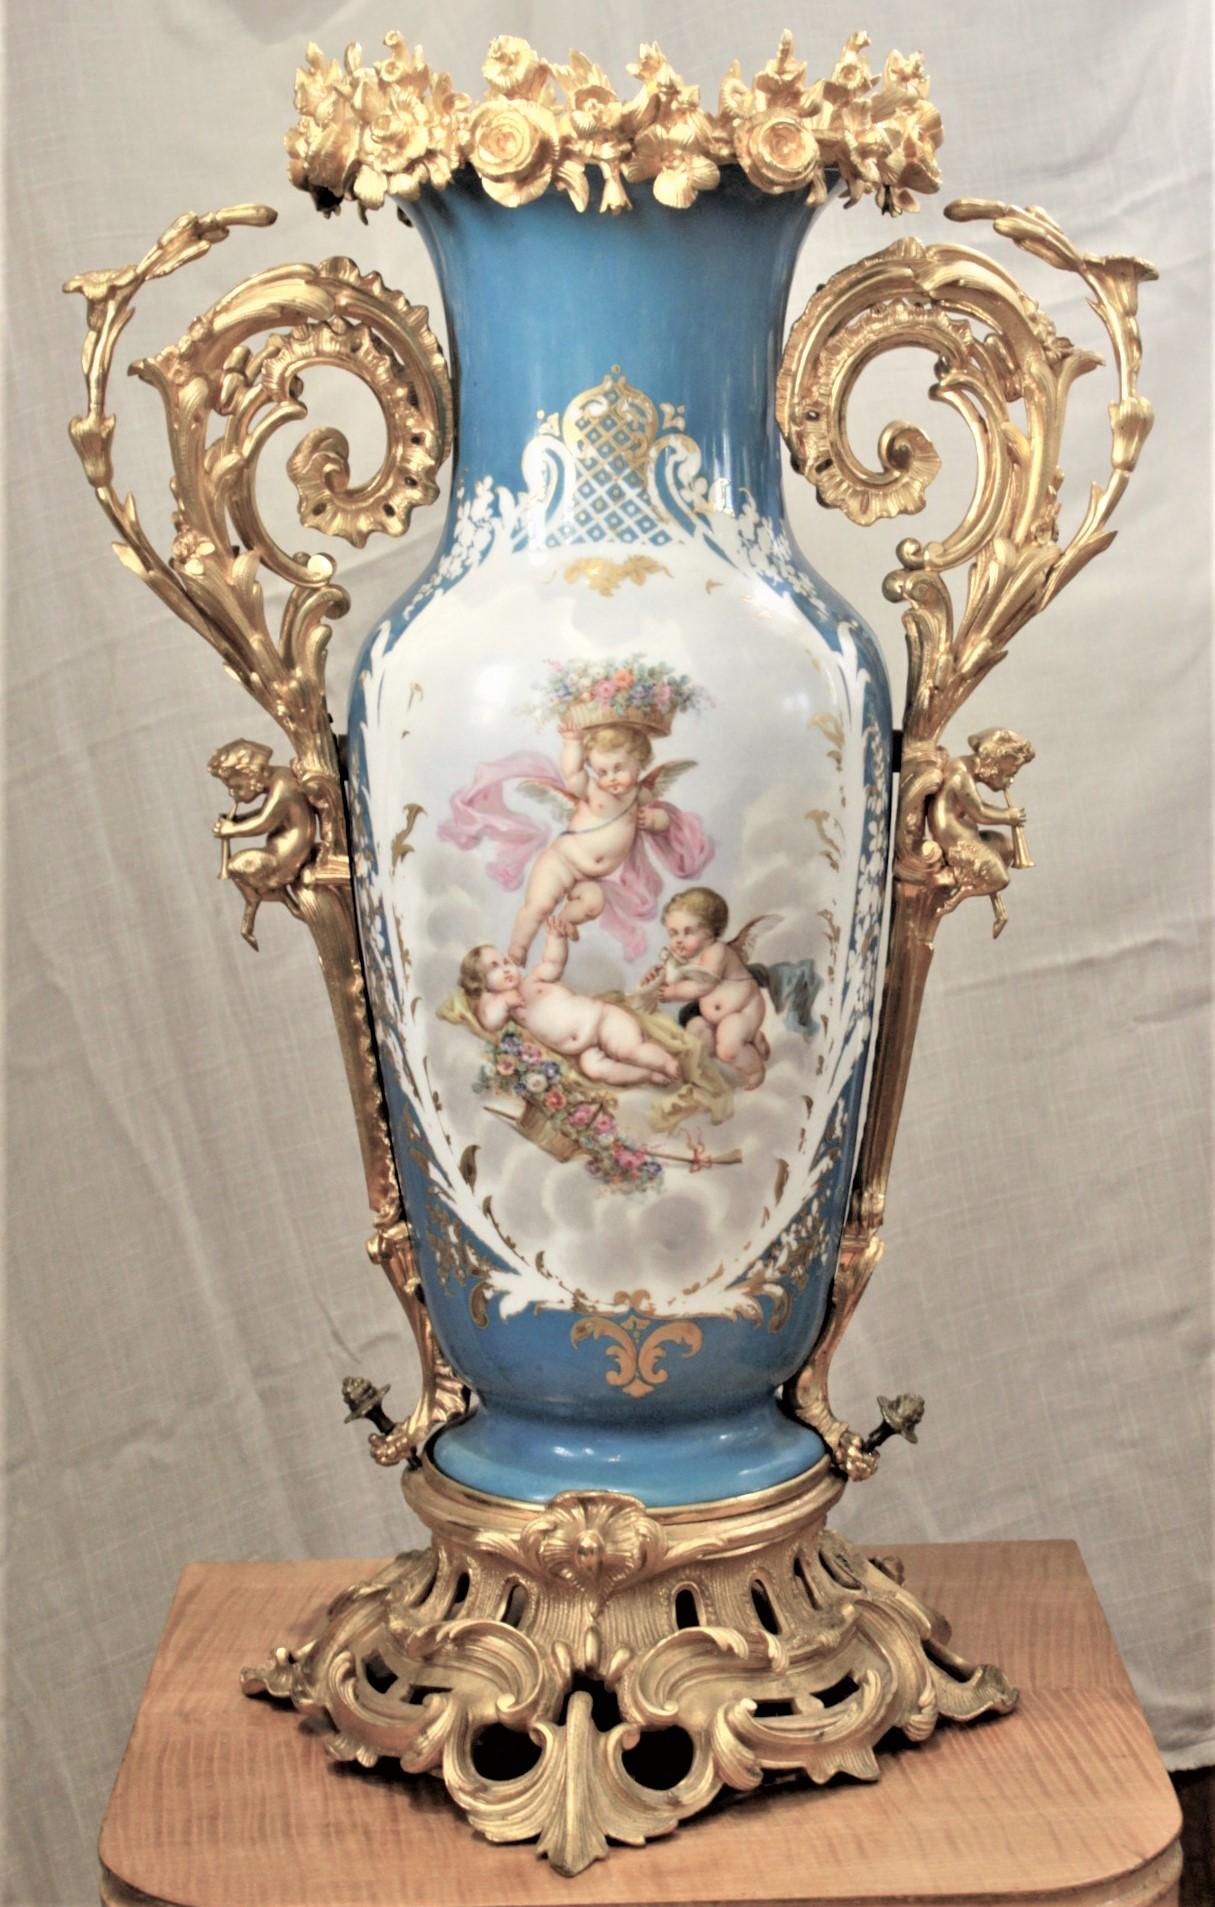 Ce grand vase ancien en porcelaine peint à la main n'est pas signé, mais on présume qu'il a été fabriqué en France vers 1880 dans le style de Sèvres. Le vase est réalisé sur un fond bleu turquoise avec des panneaux peints à la main bien exécutés de